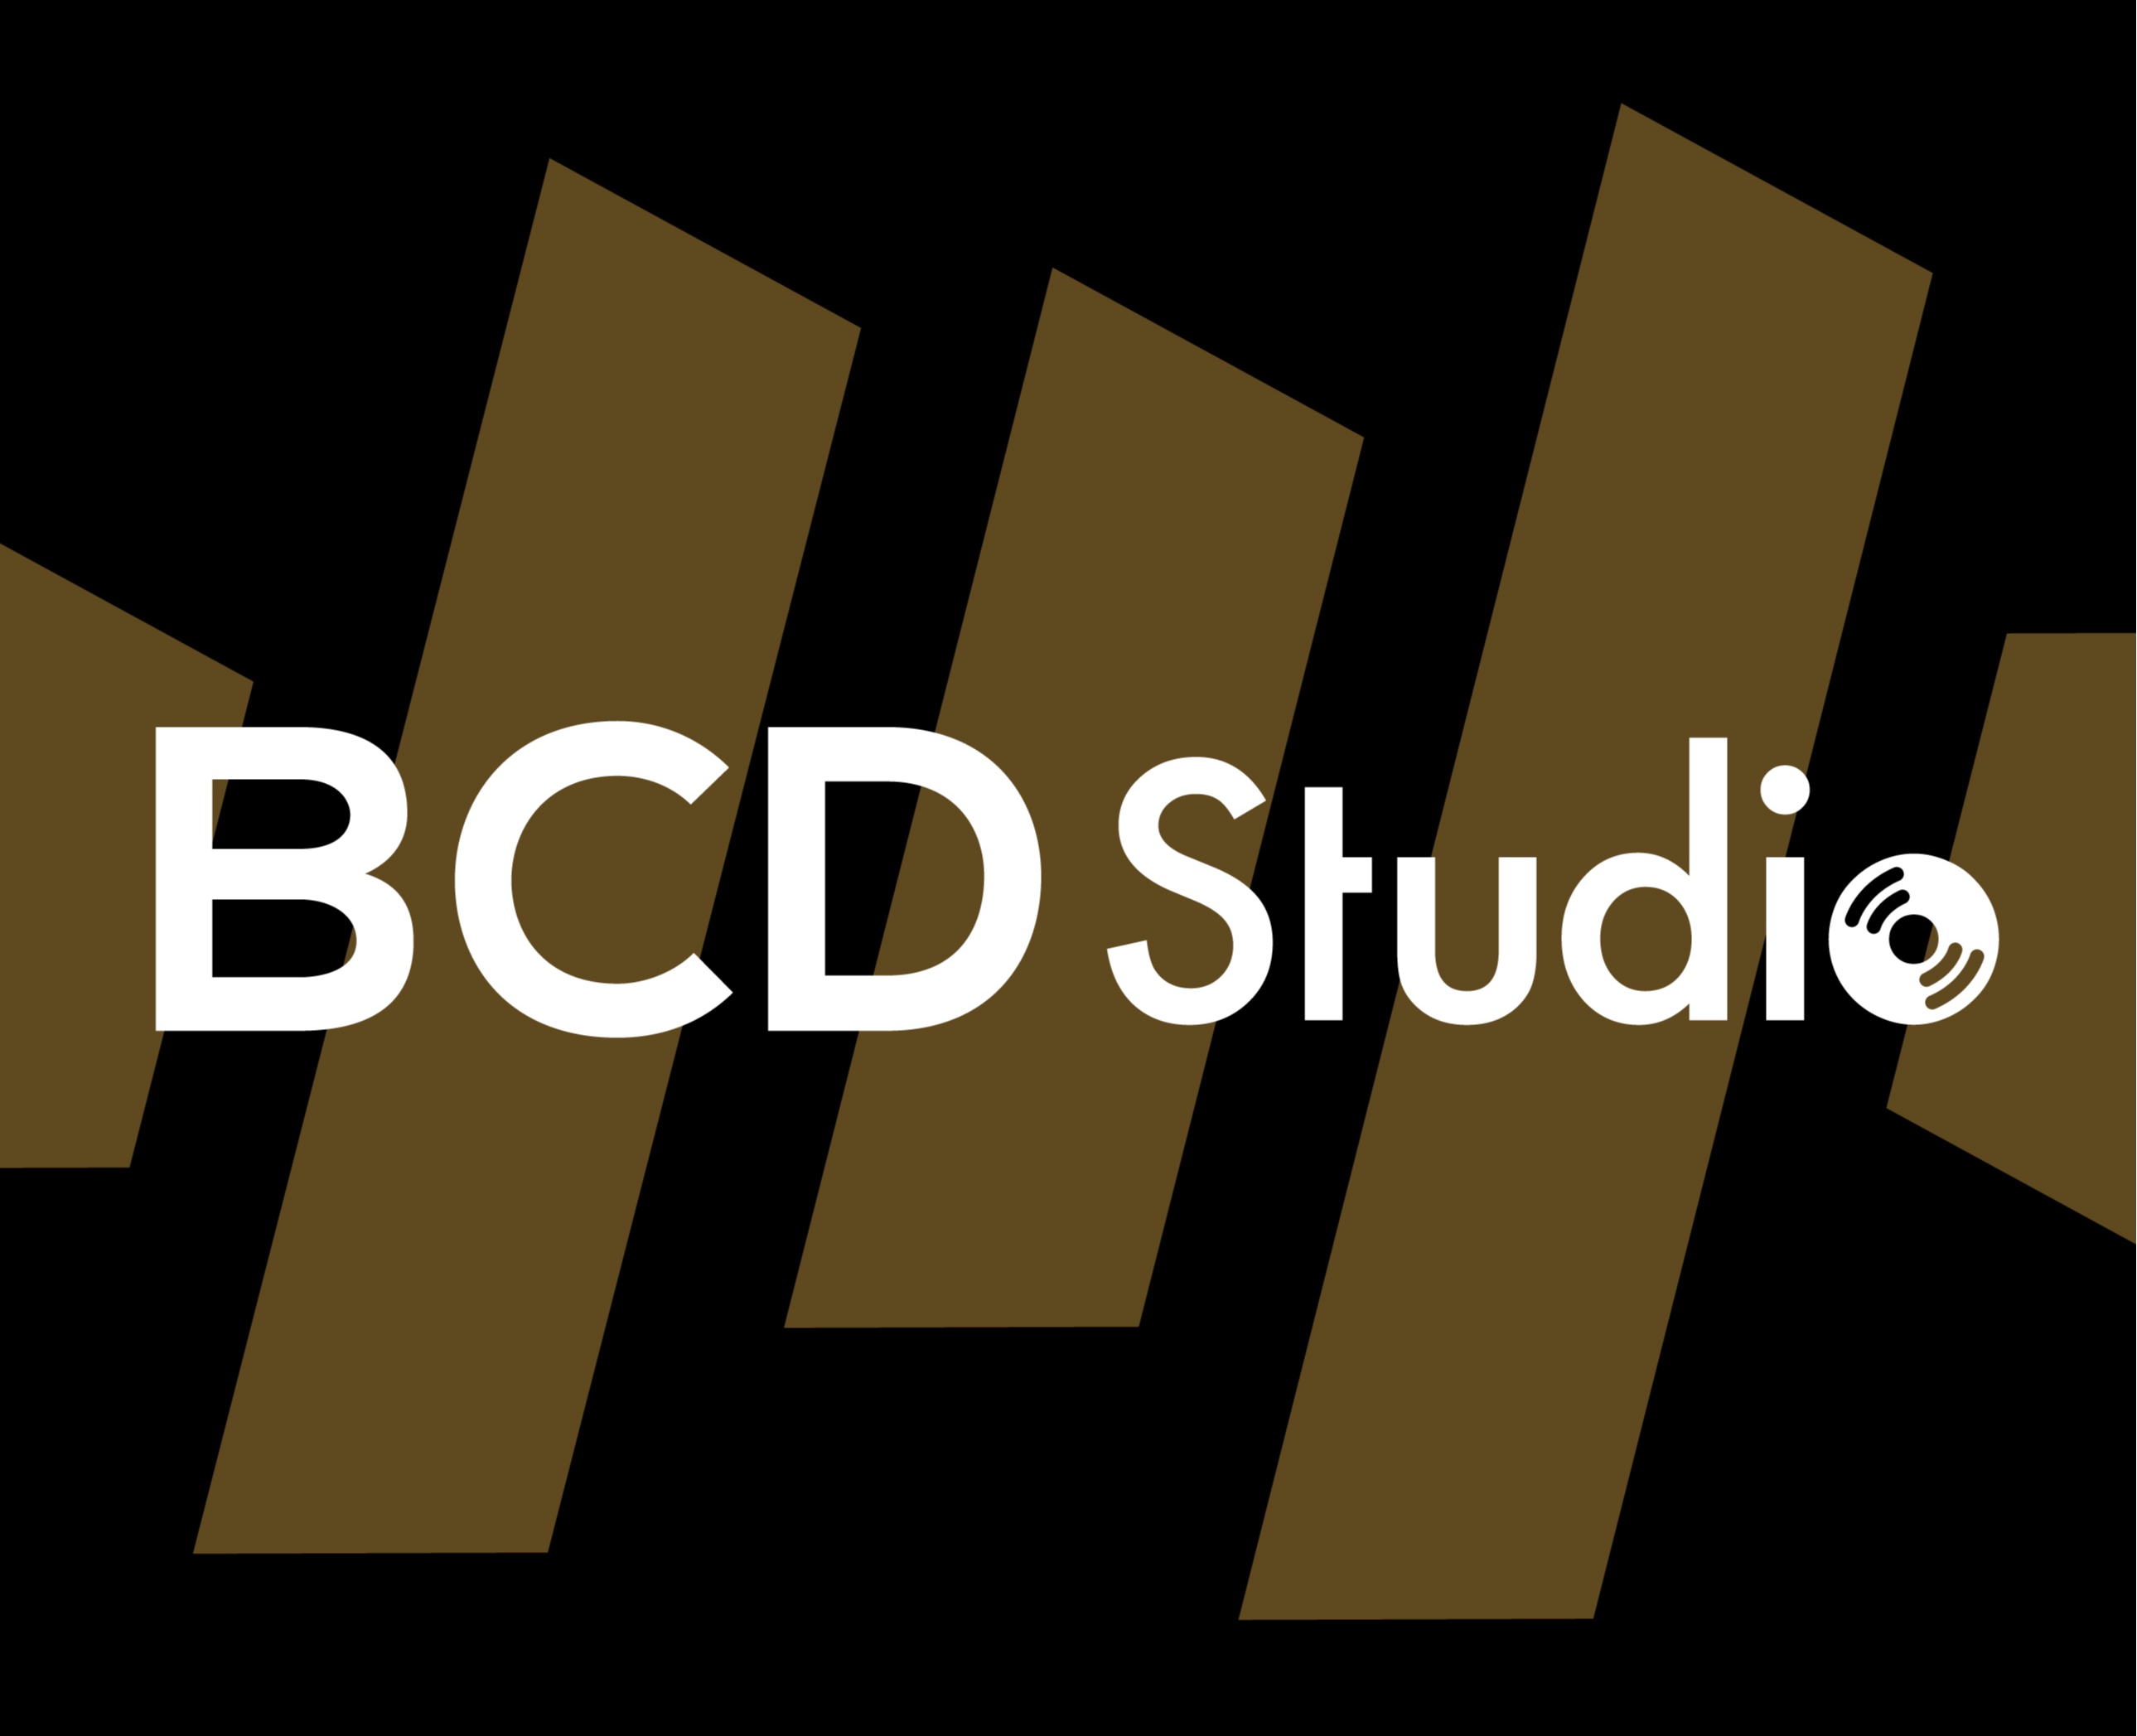 BCD Studio